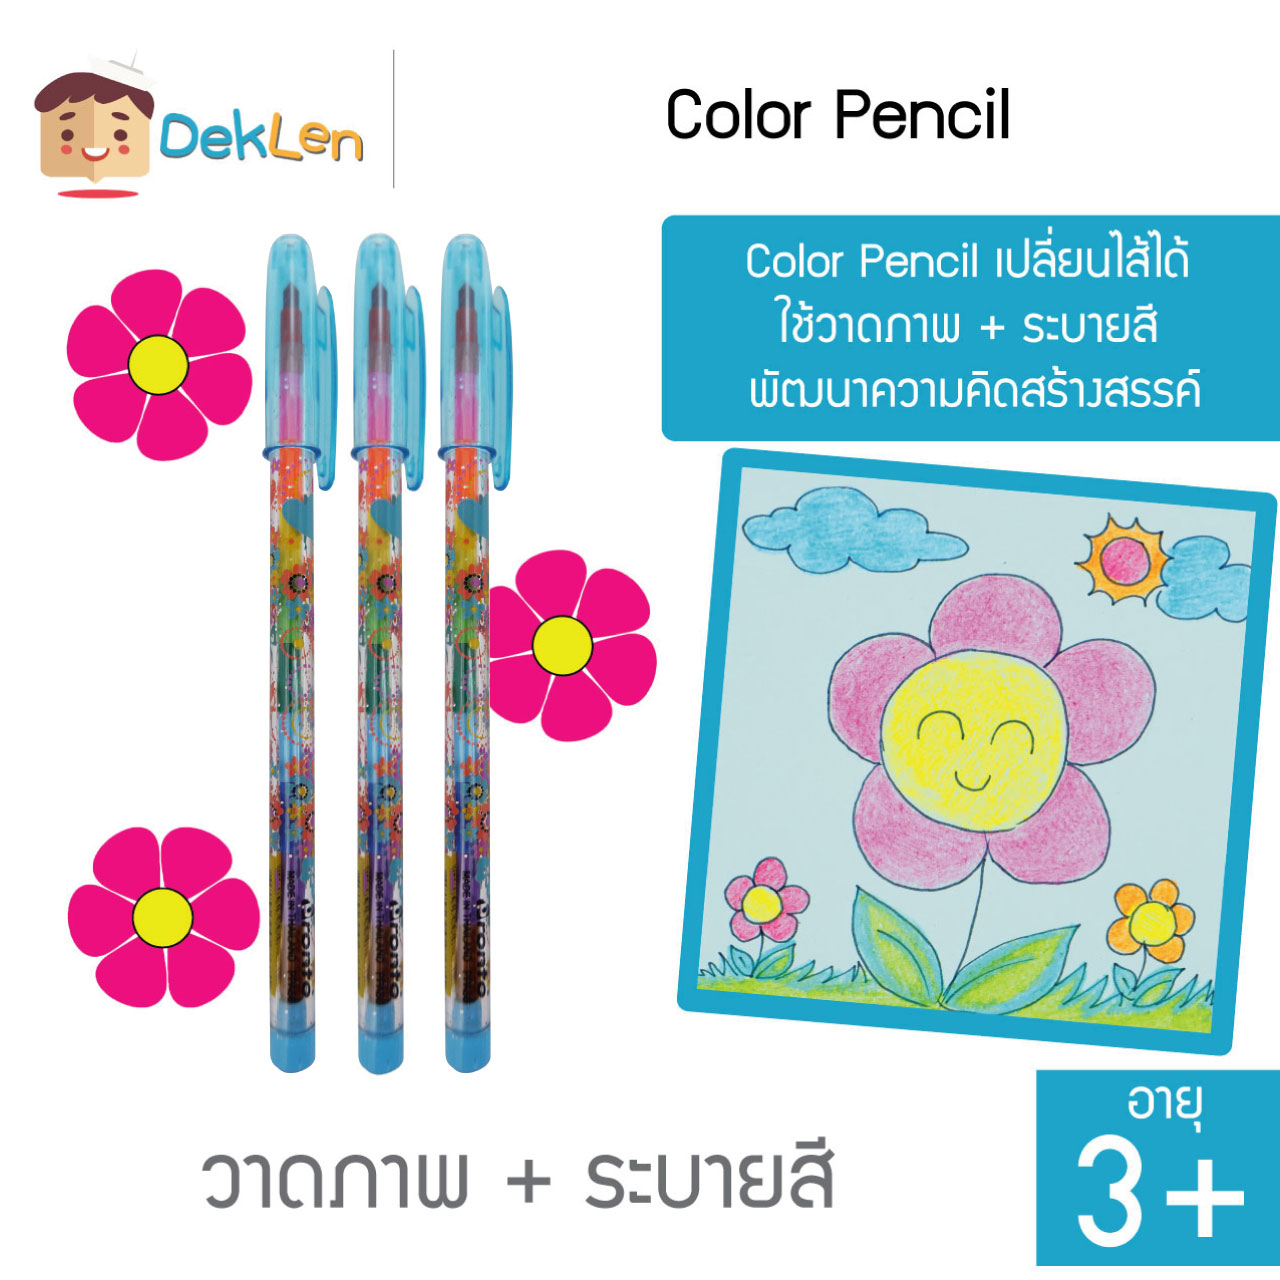 ดินสอสีต่อไส้ 3 แท่ง Color Pencil เปลี่ยนไส้ได้ ใช้วาดภาพ + ระบายสี พัฒนาความคิดสร้างสรรค์